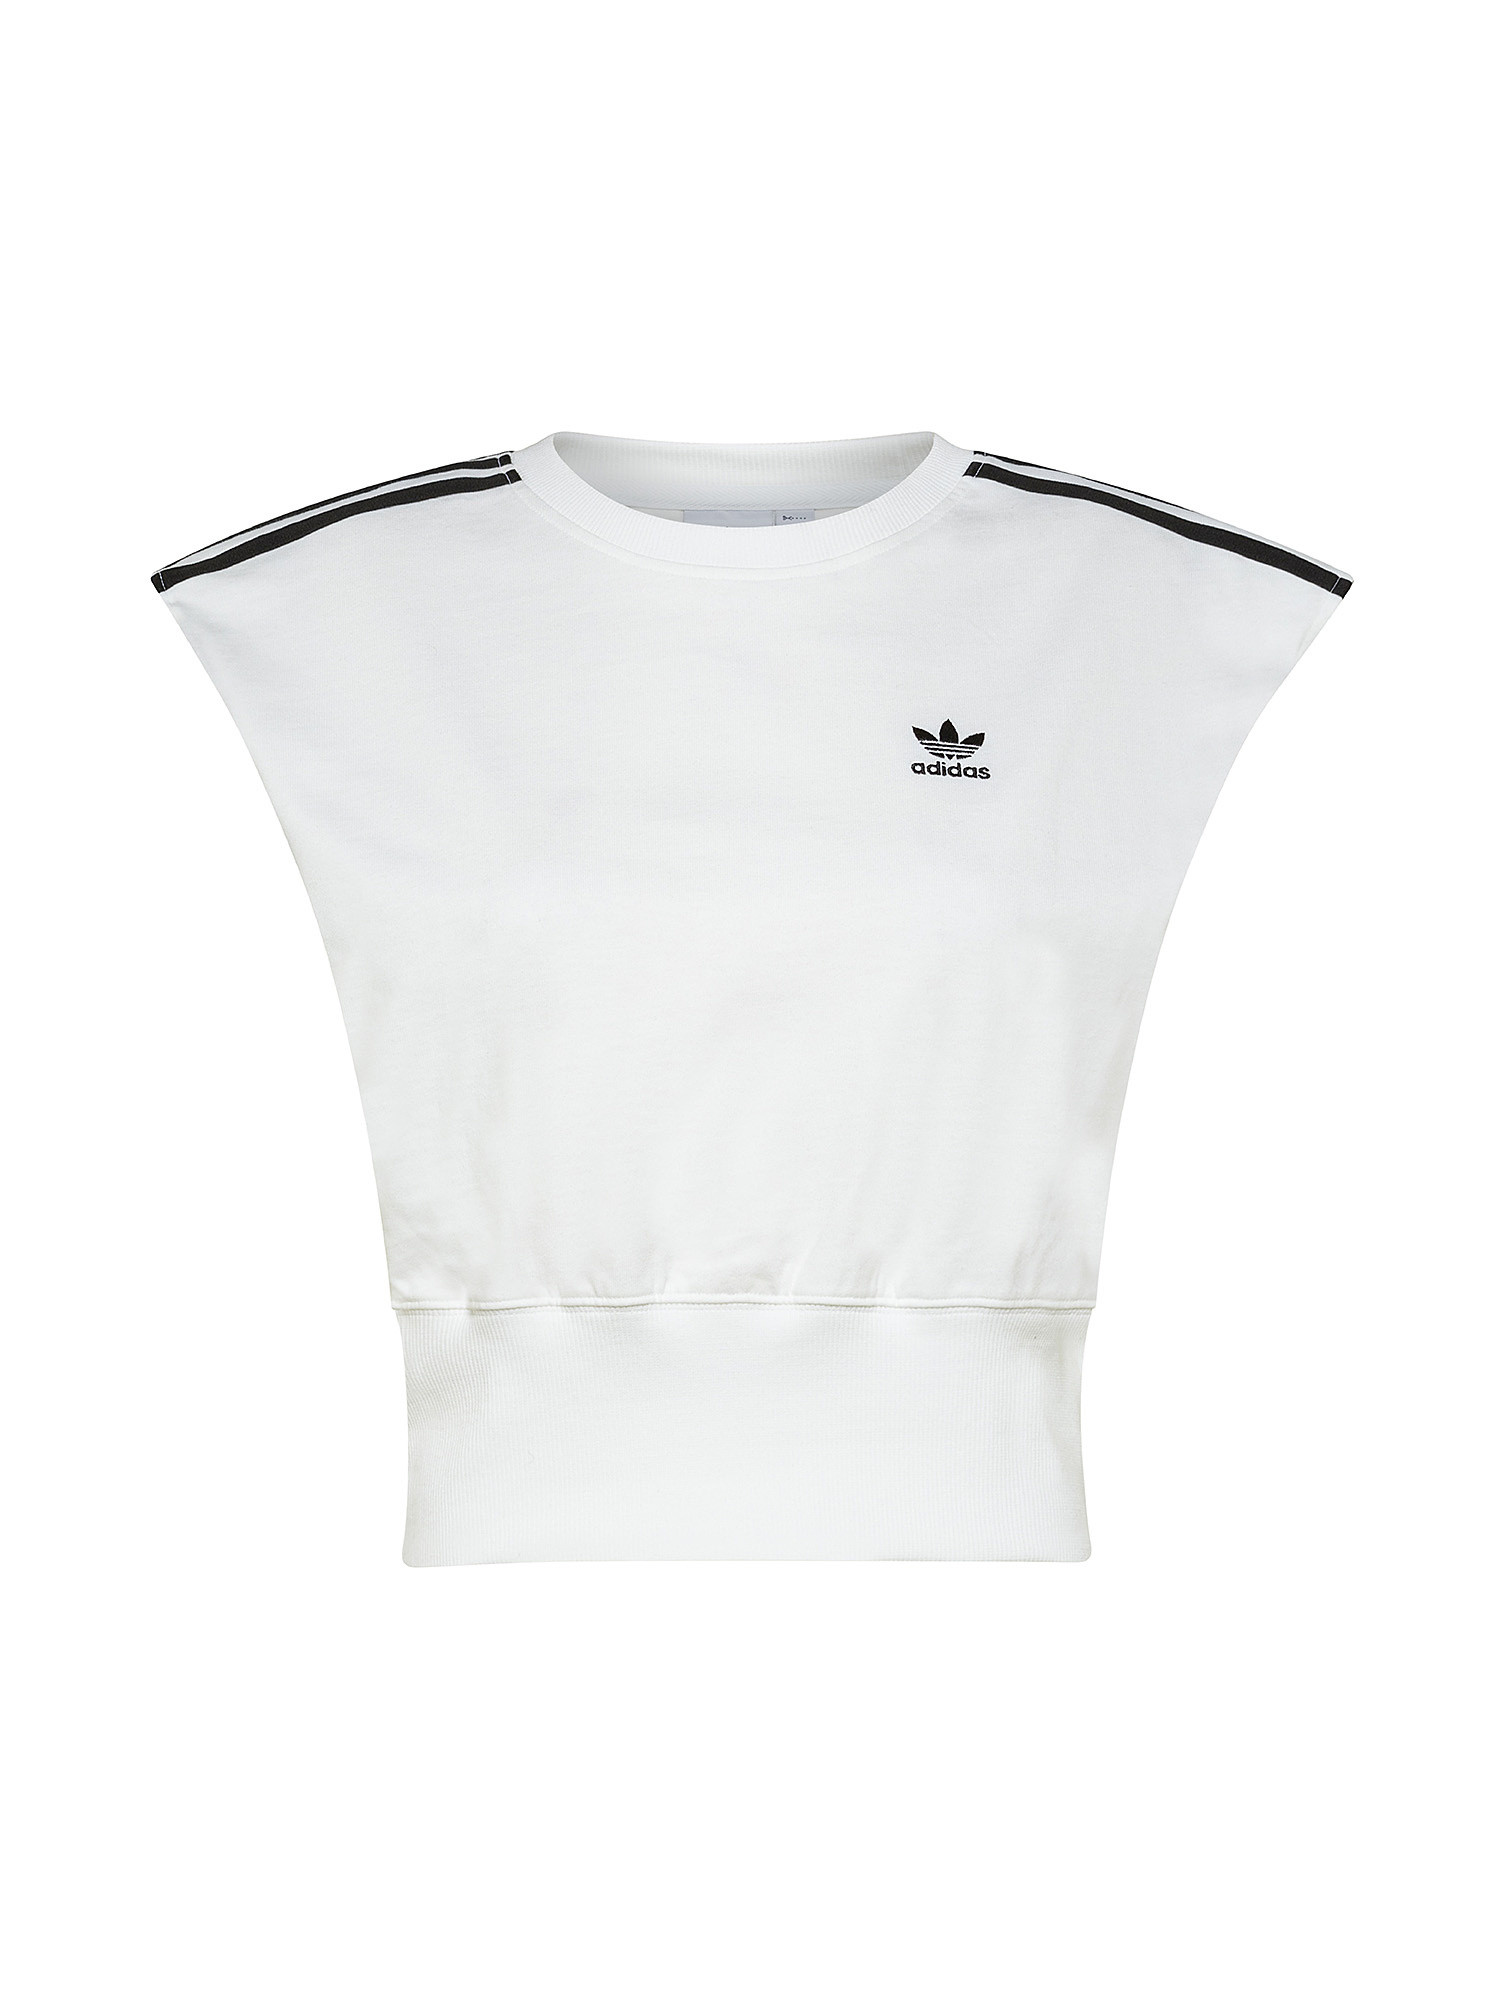 Adidas - Adicolor T-shirt with logo, White, large image number 0